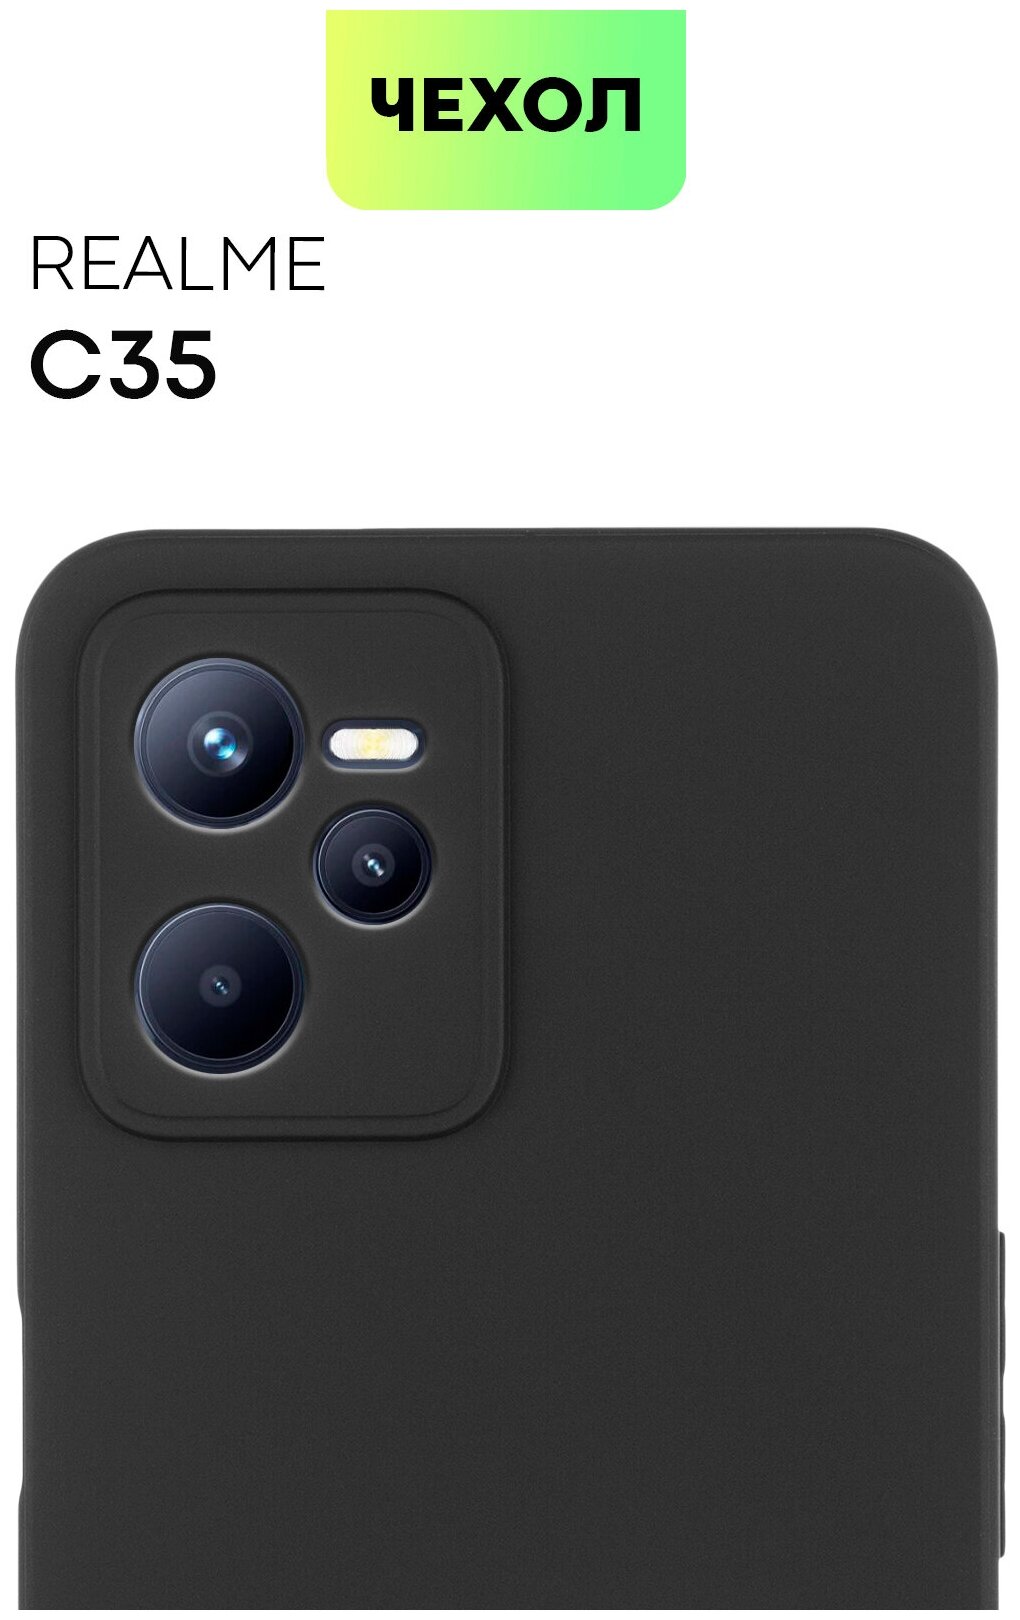 Чехол BROSCORP для Realme C35 (Реалми С35, Реалм С35, Ц35), тонкая с матовым покрытием и бортиком (защитой) вокруг модуля камер, черная